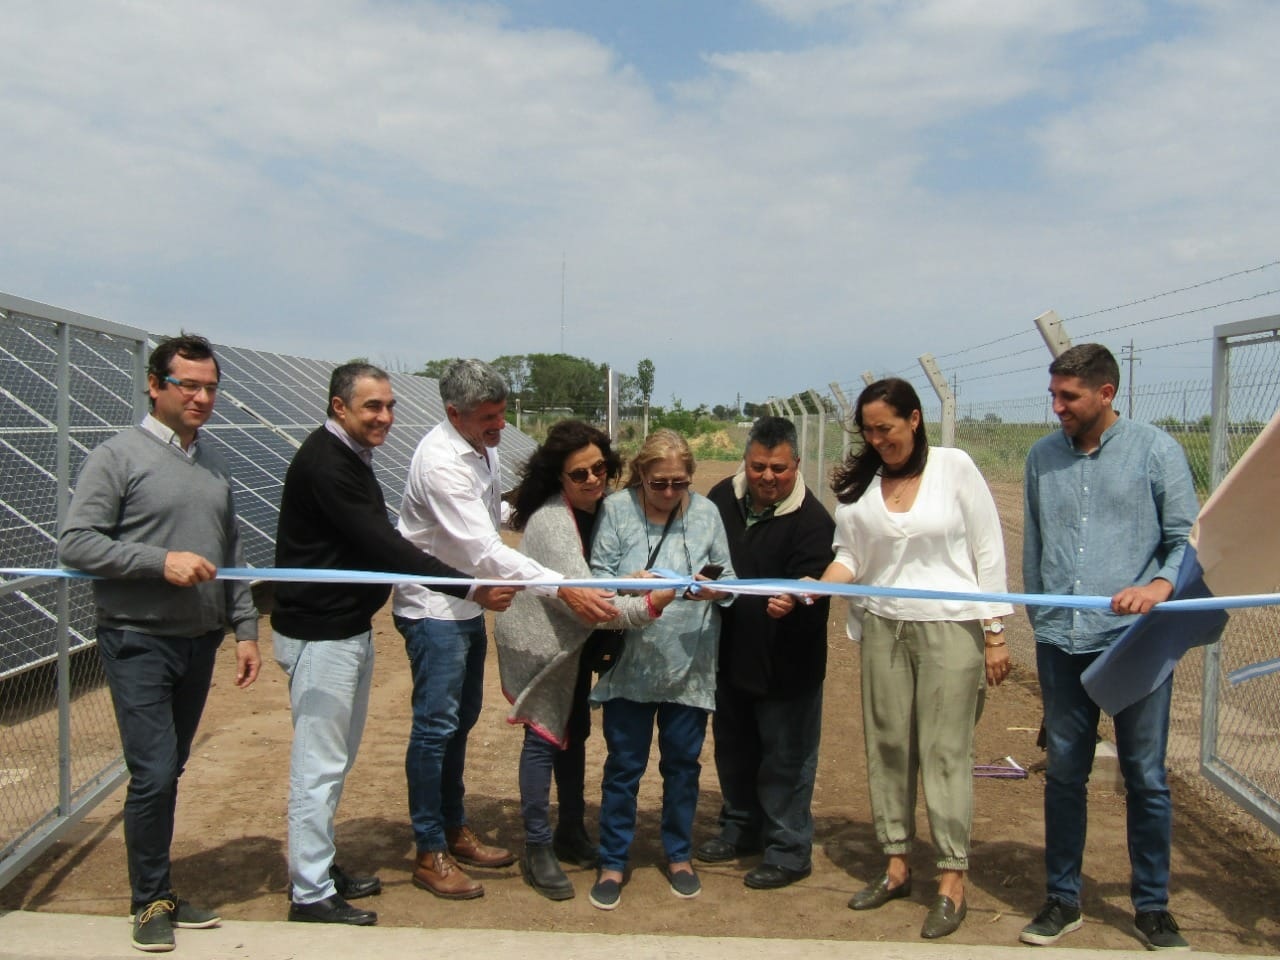 María Teresa inauguró la Comunidad Solar, primera en la provincia